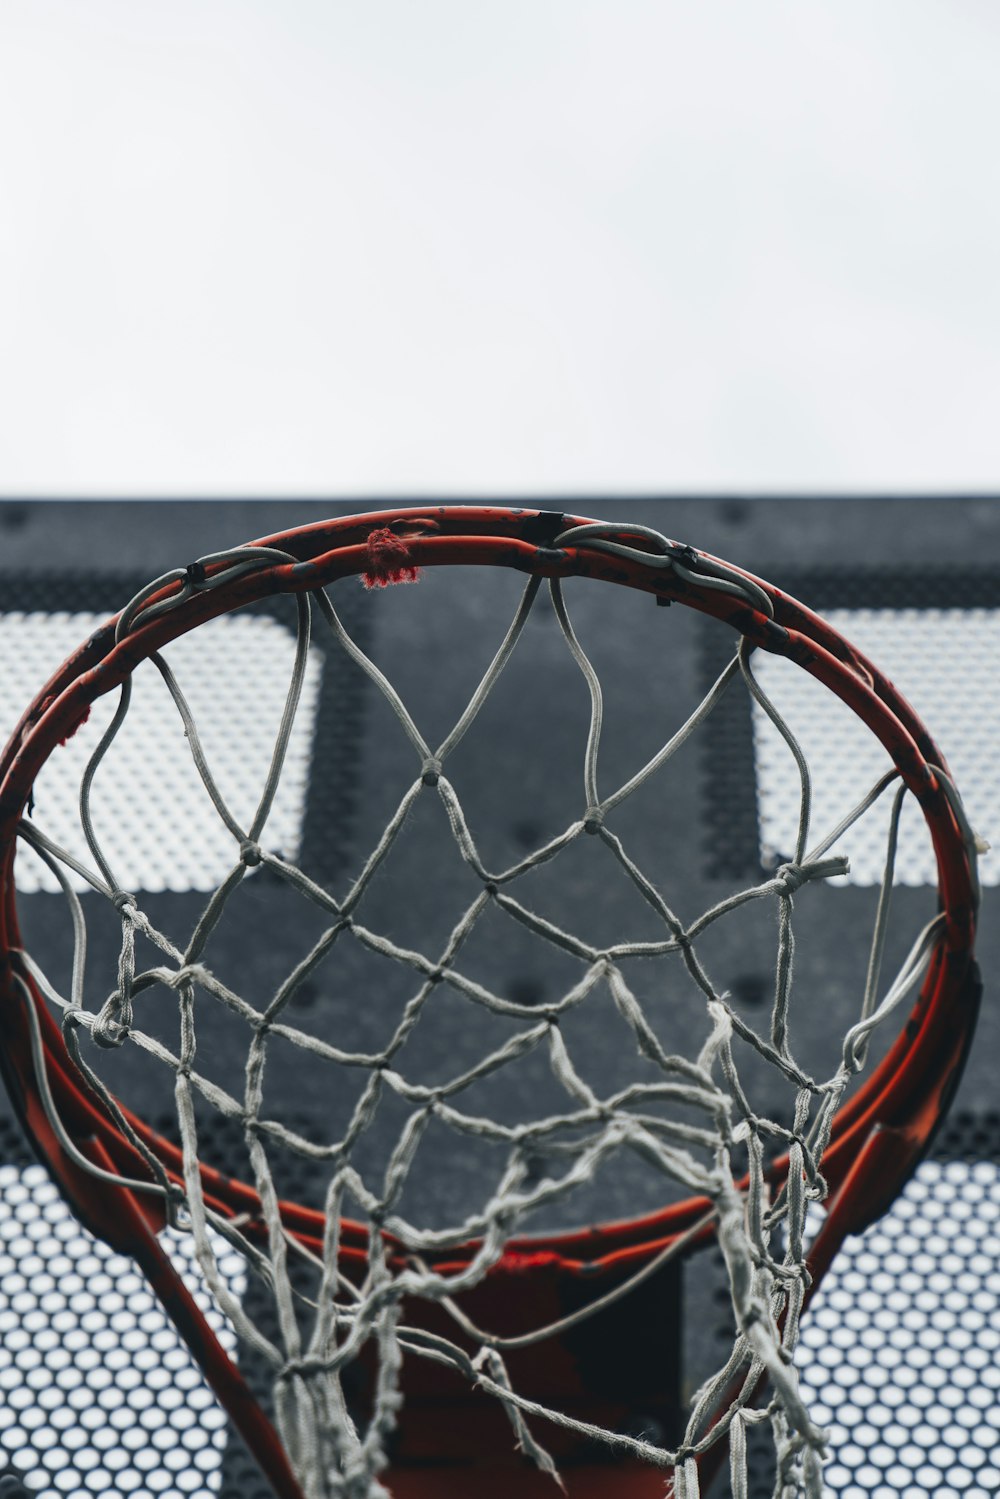 Photographie sélective de mise au point de l’anneau de basket-ball rouge